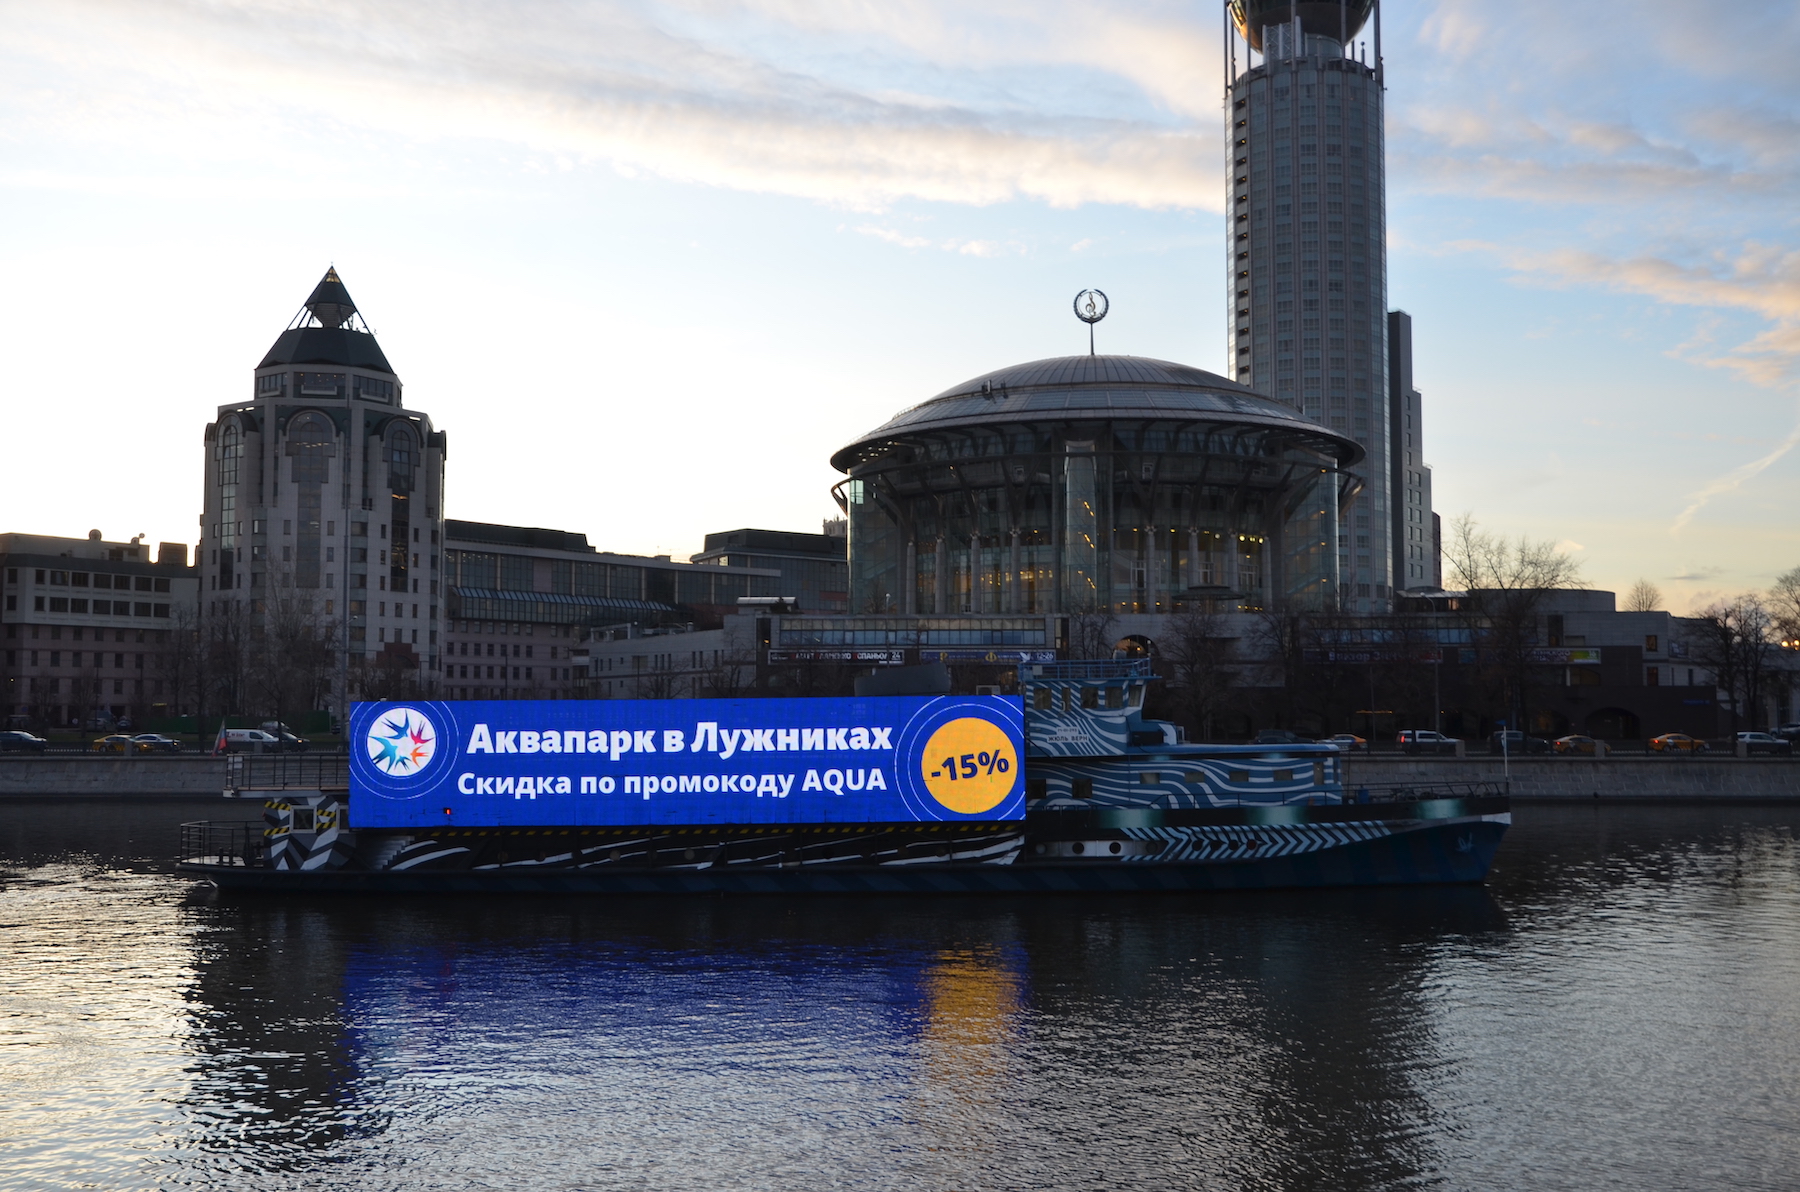 Реклама рекреационного объекта, расположенного у Москва-реки - Аквапарка в Лужниках